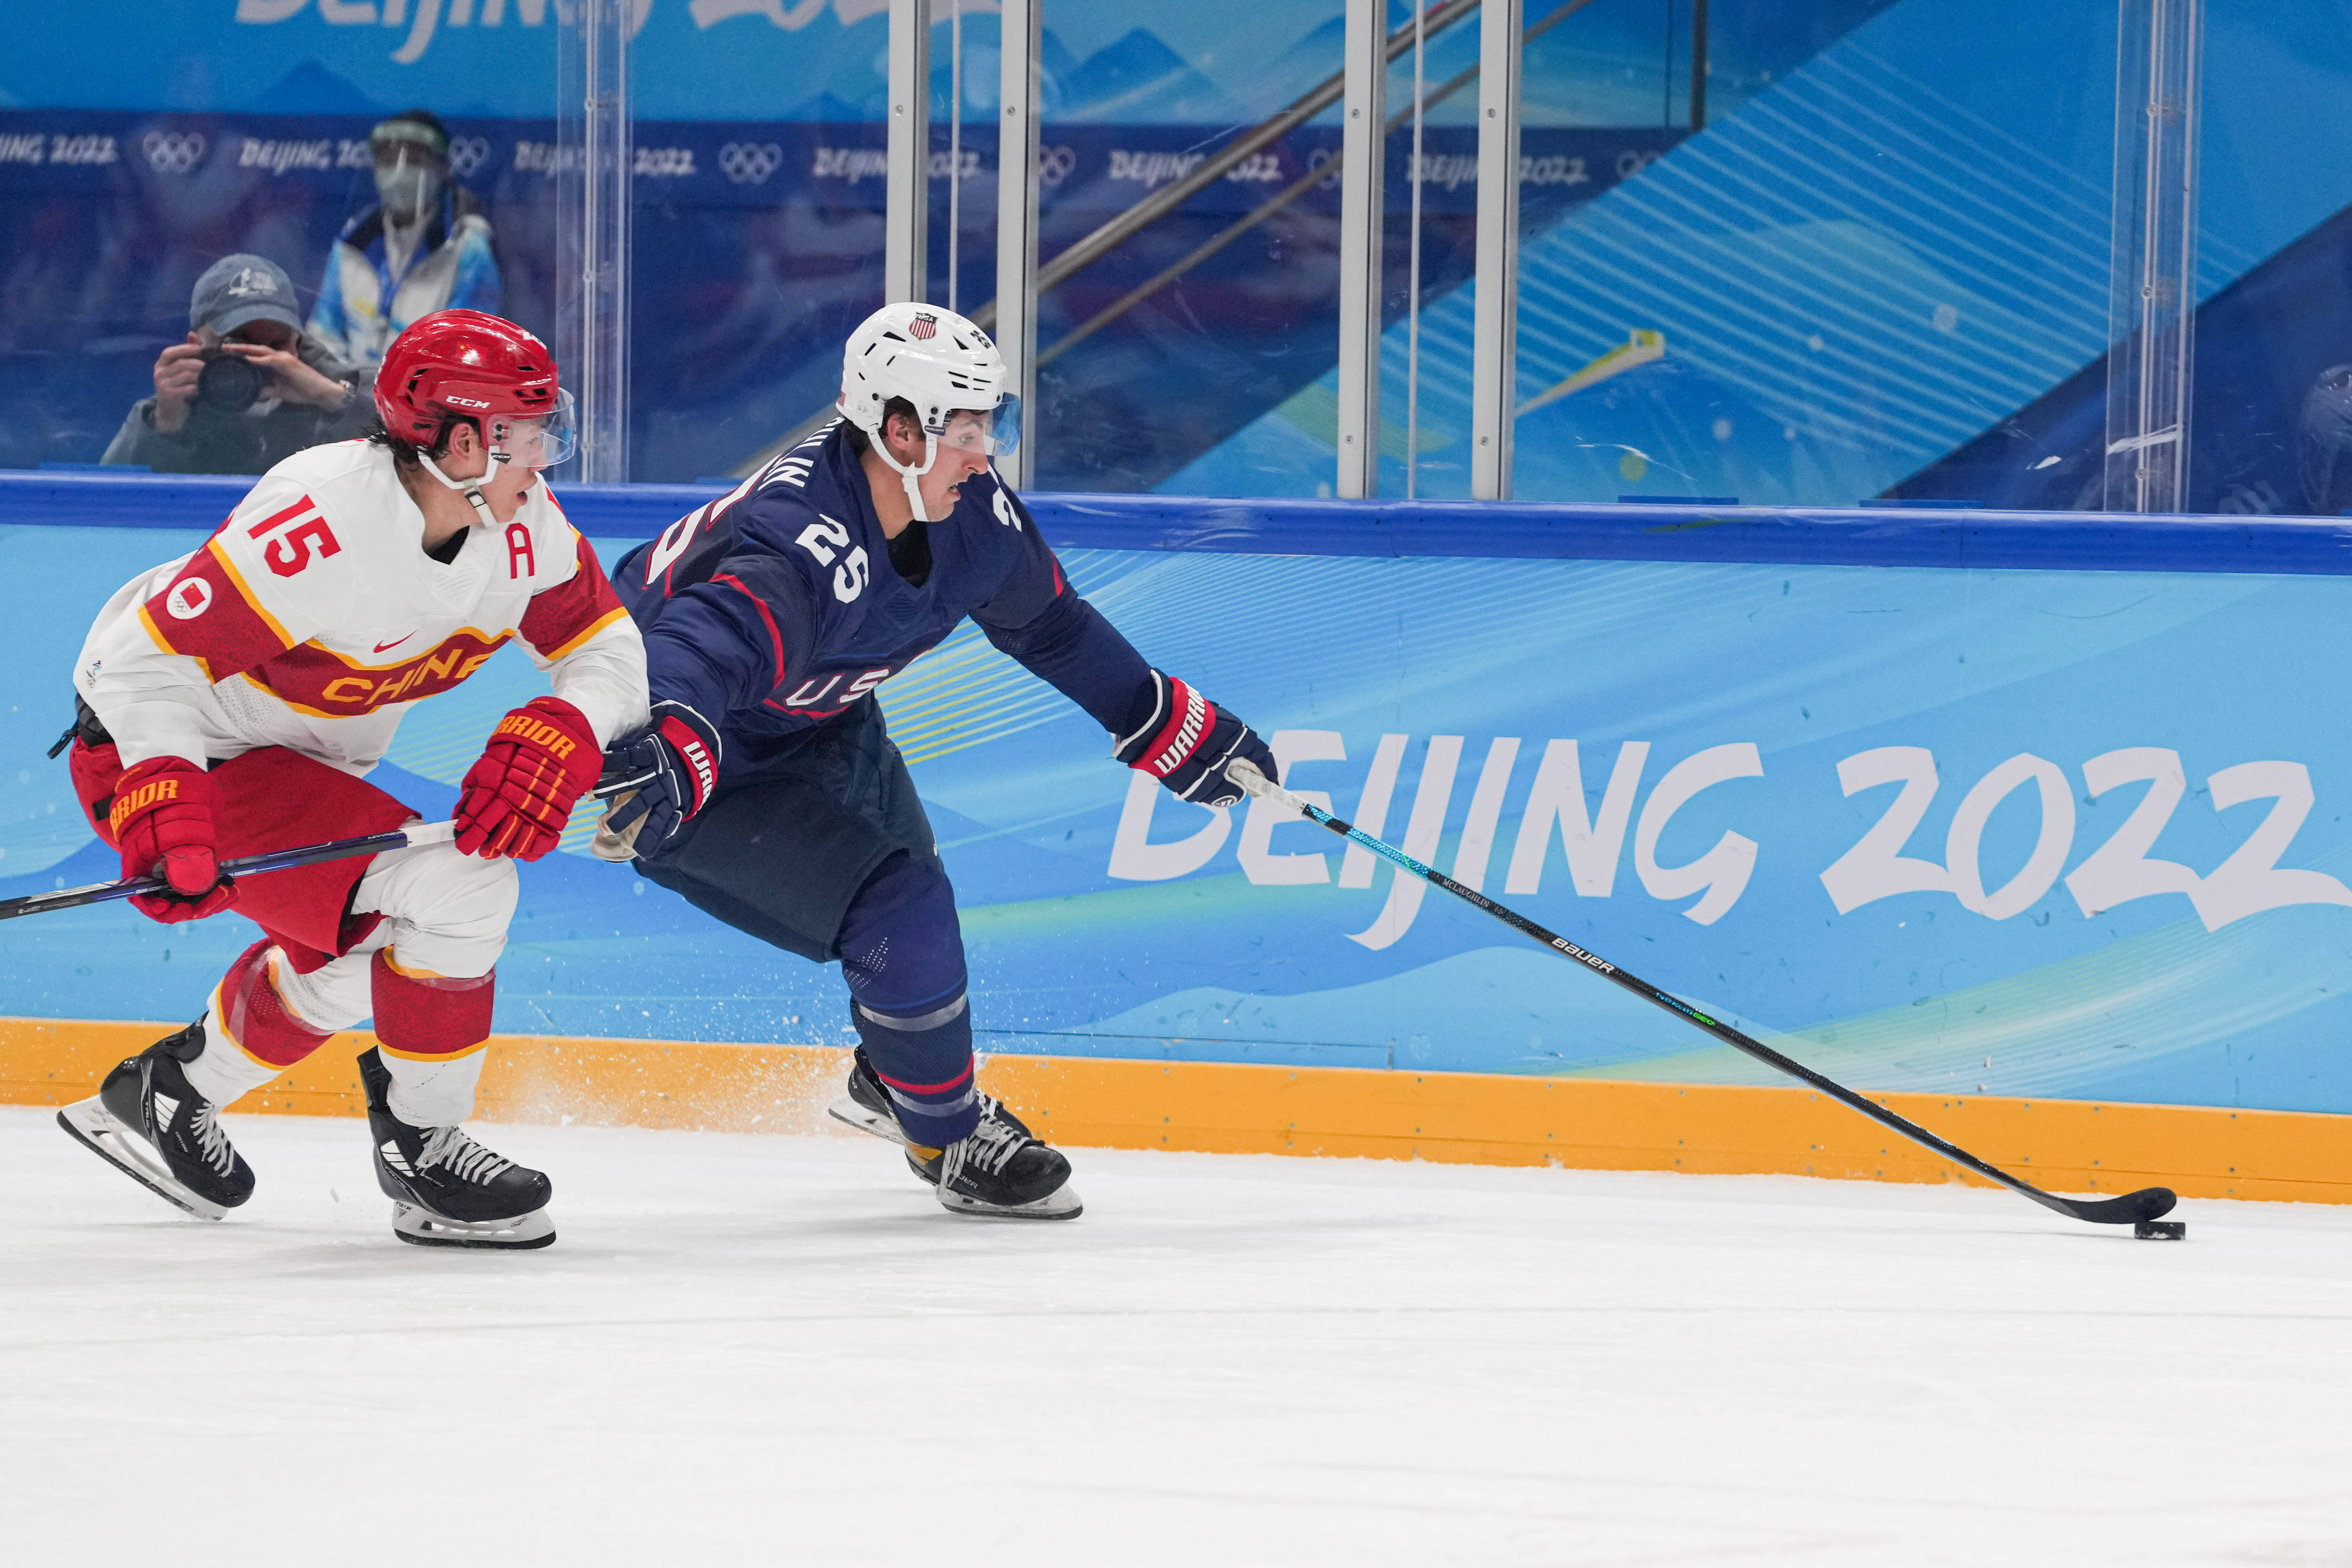 刘潇 摄当日,在国家体育馆举行的北京2022年冬奥会男子冰球小组赛中